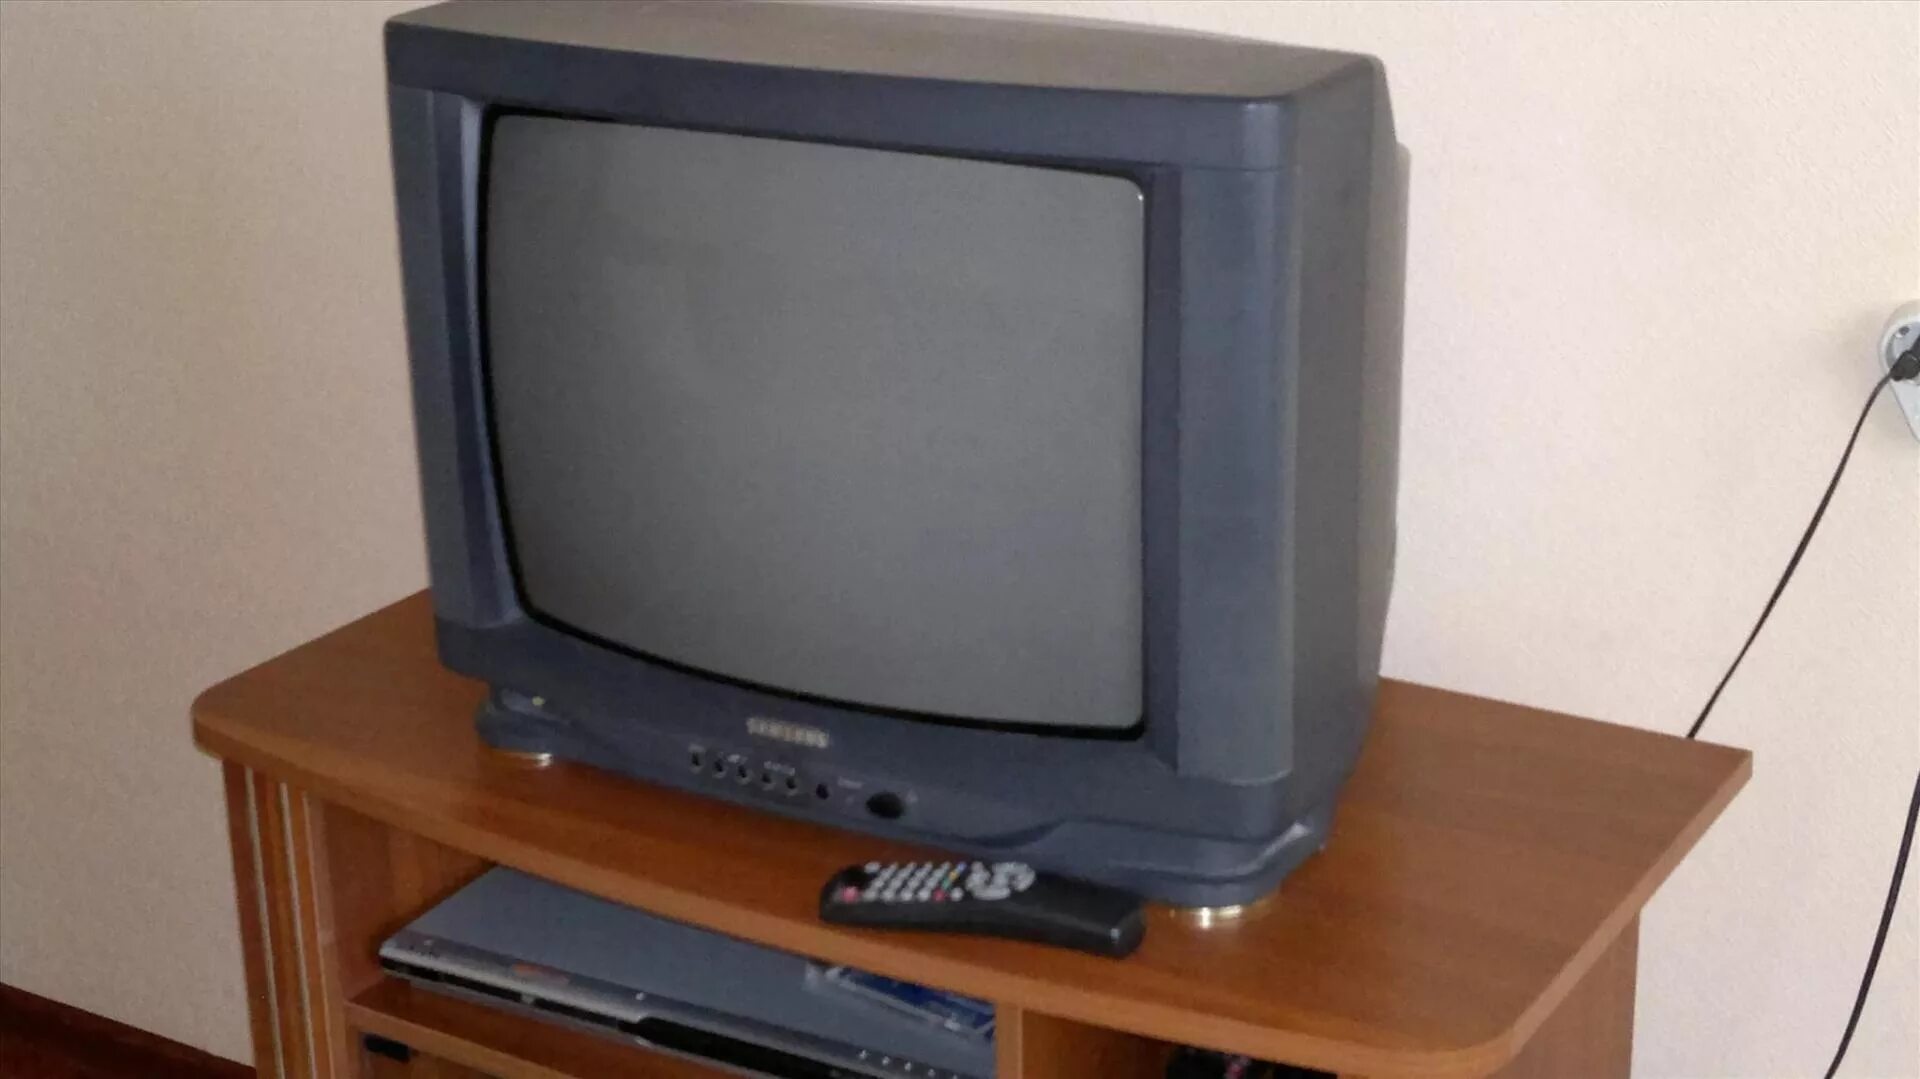 Куплю бу воронеже телевизор. Телевизор самсунг 21 ЭЛТ. Телевизор самсунг старый кинескопный. Телевизор самсунг ЭЛТ 1996. Телевизор самсунг ЭЛТ 54 см.